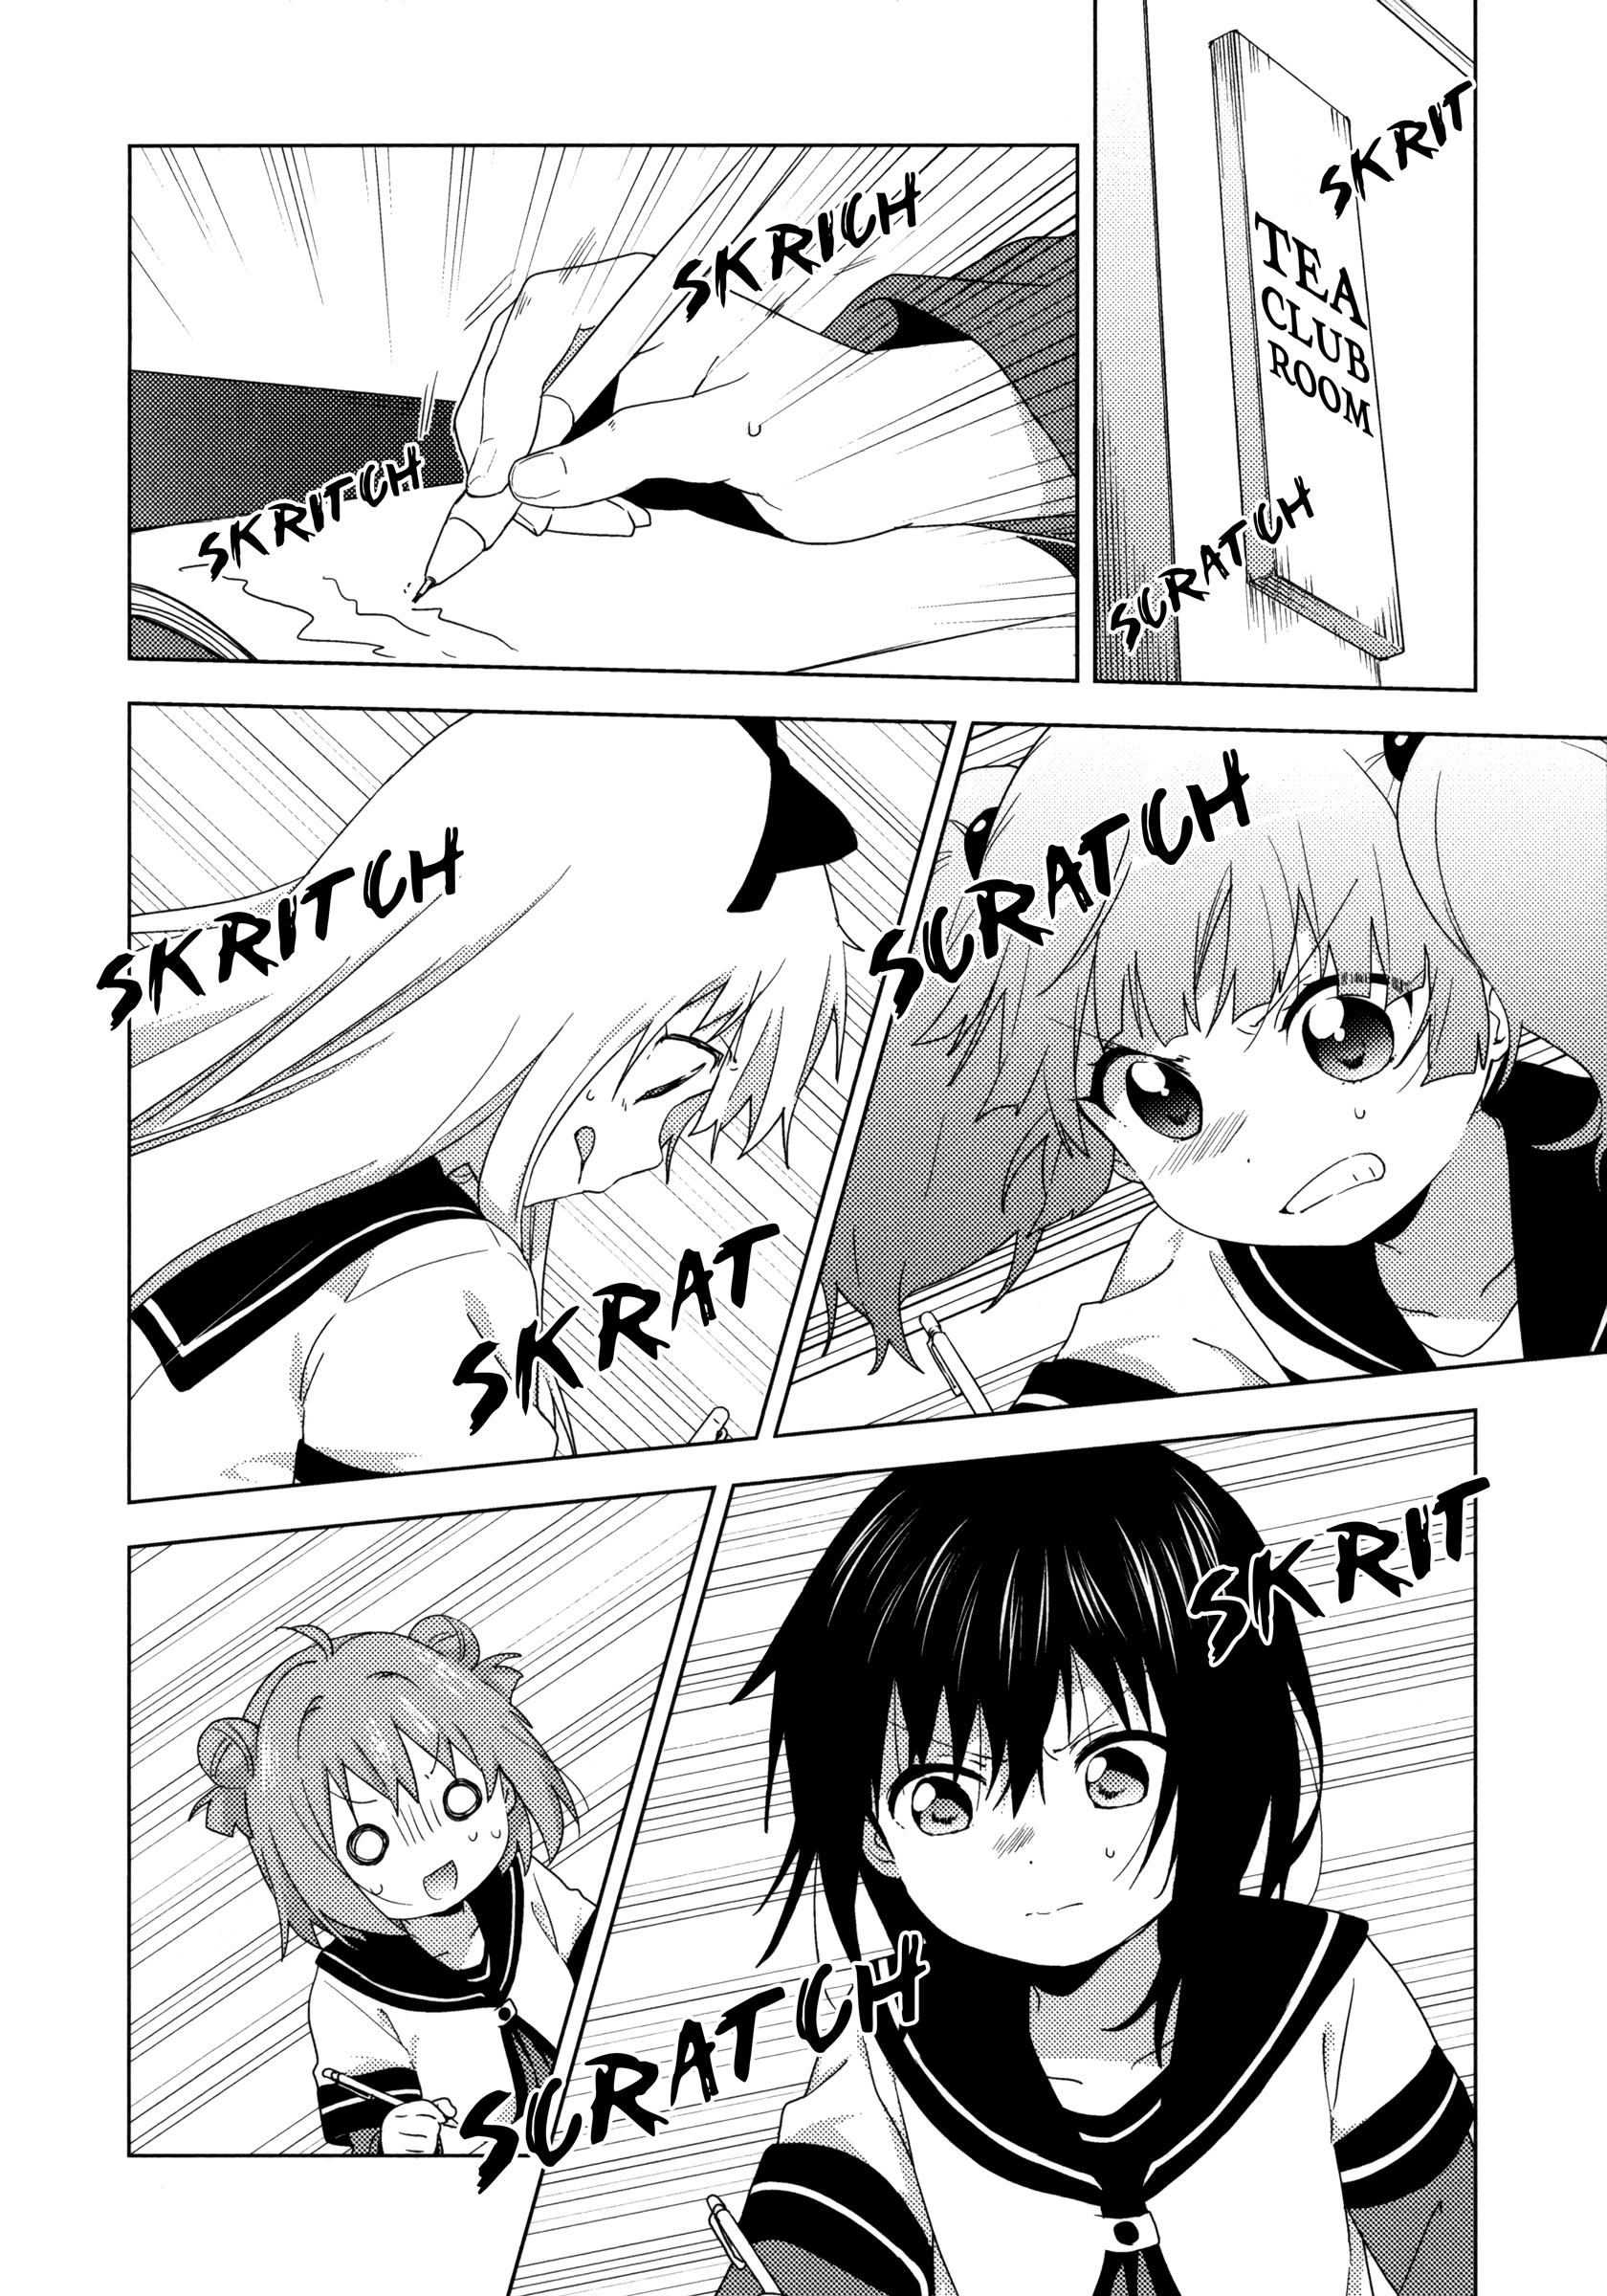 Yuru Yuri - Page 2